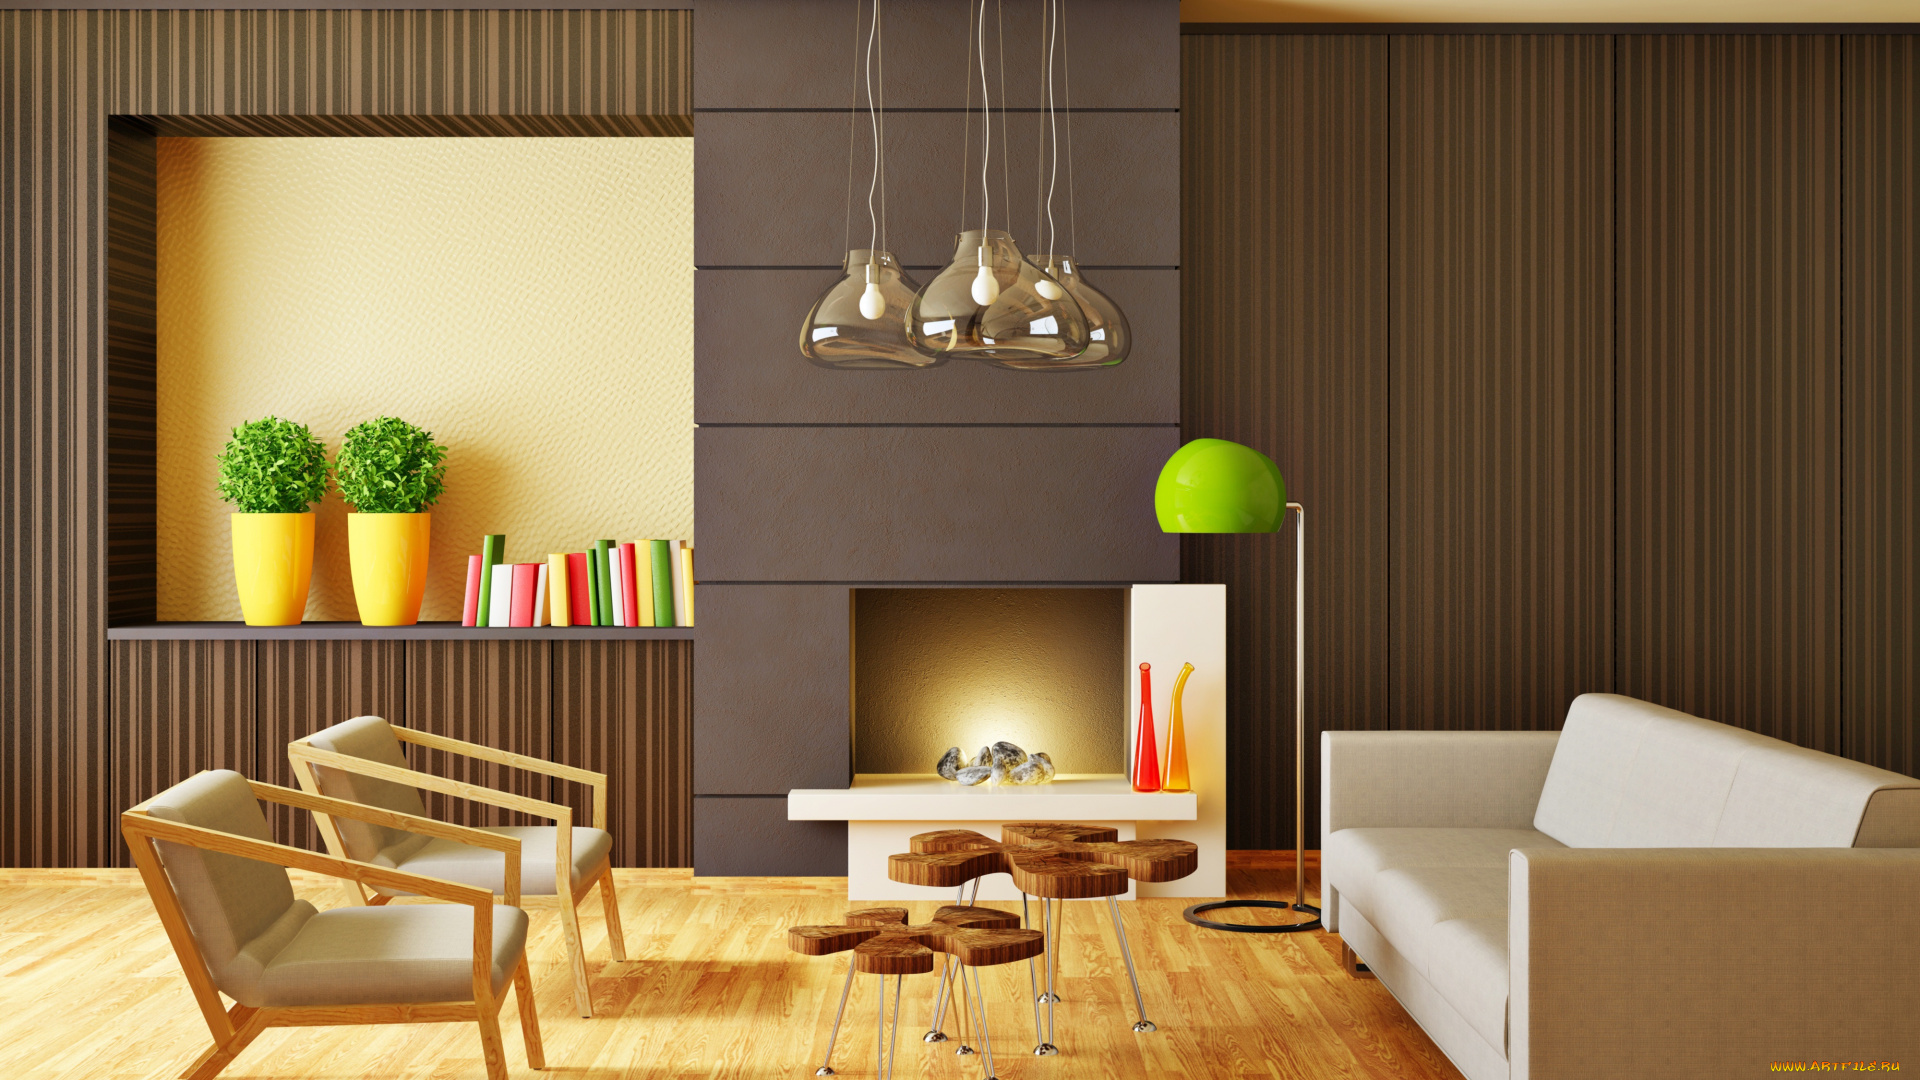 3д, графика, реализм, , realism, мебель, интерьер, гостиная, room, interior, modern, stylish